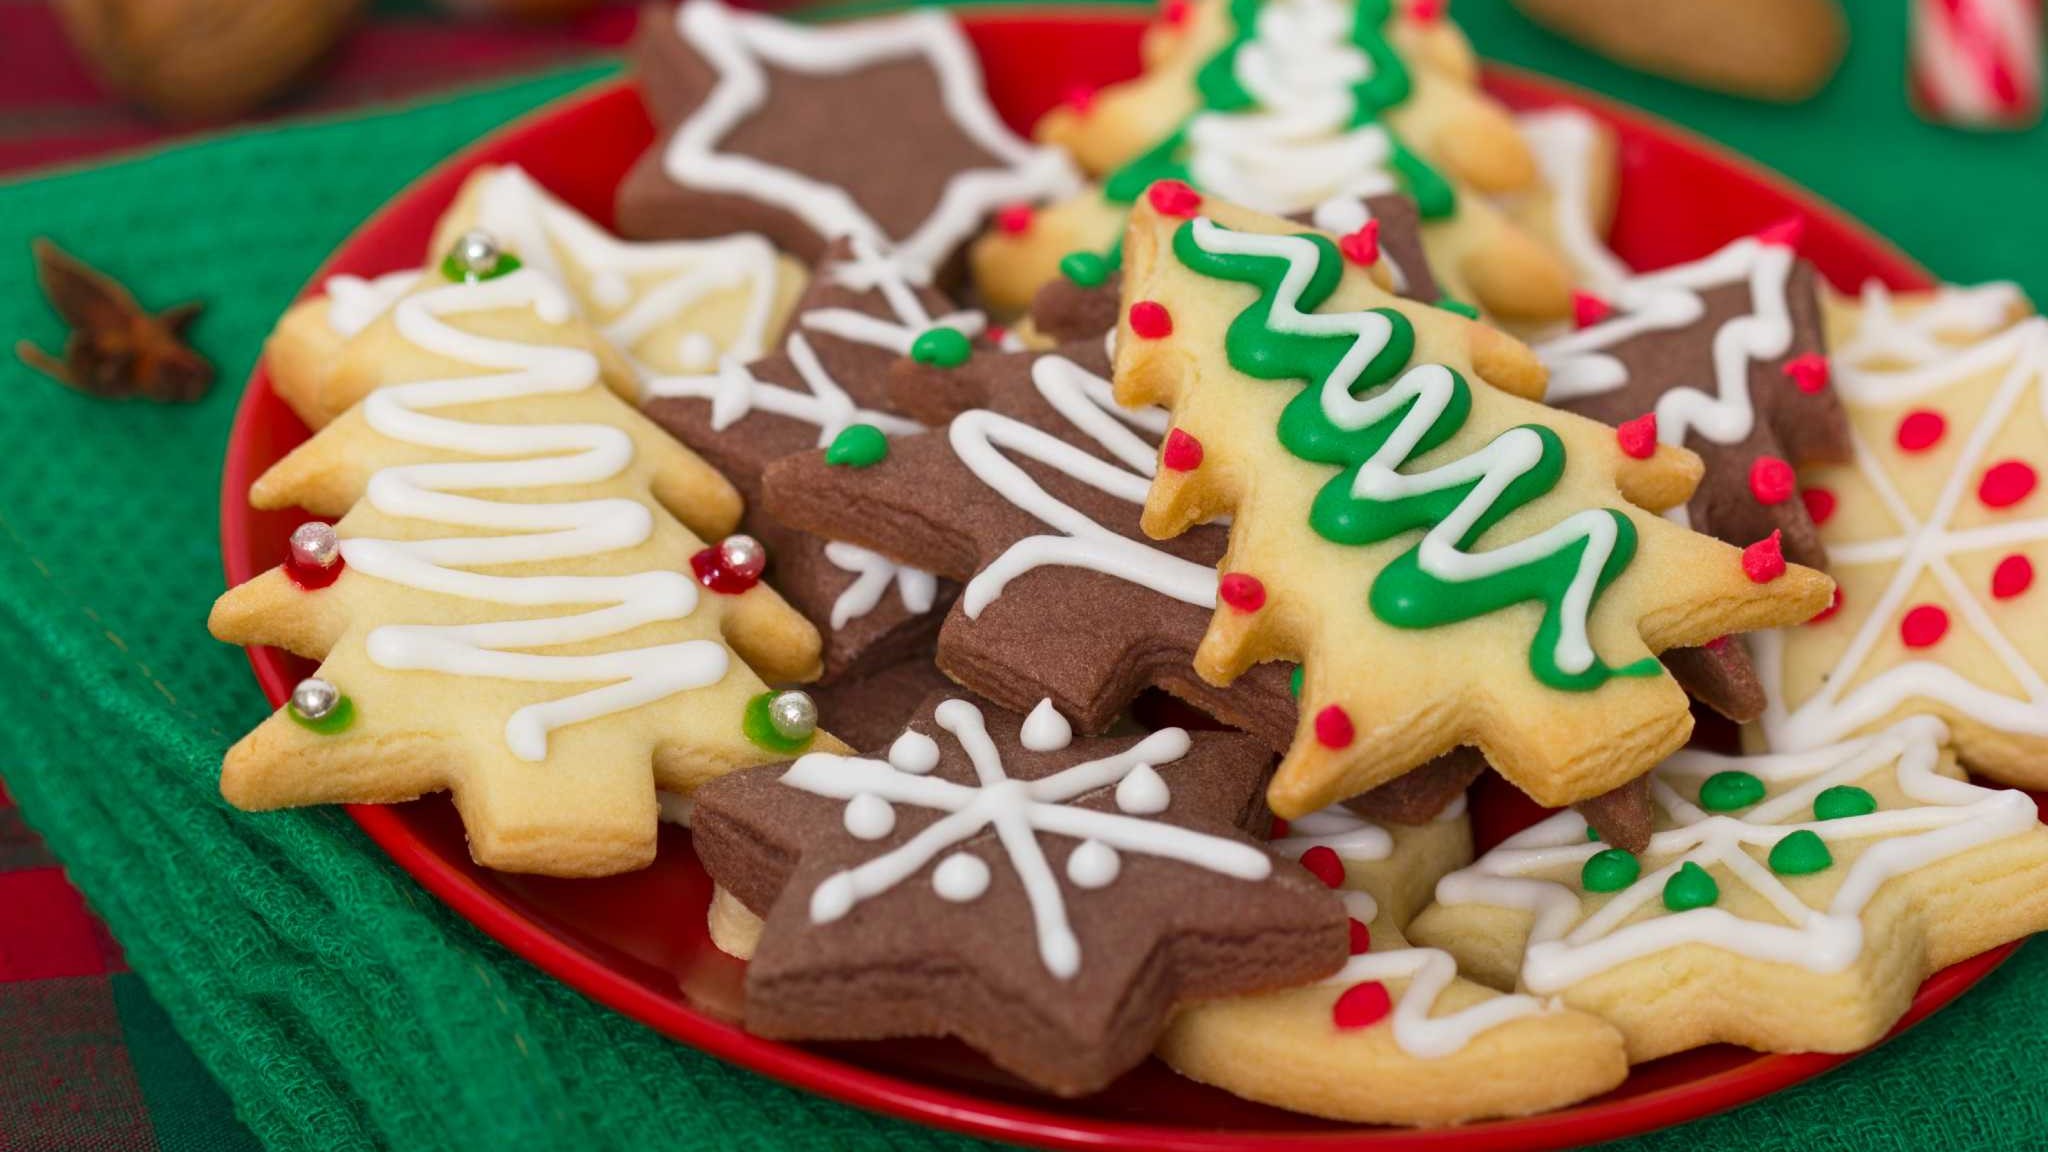 Полицейские отправили печенье на ДНК-экспертизу по запросу американки, чтобы доказать существование Санта-Клауса